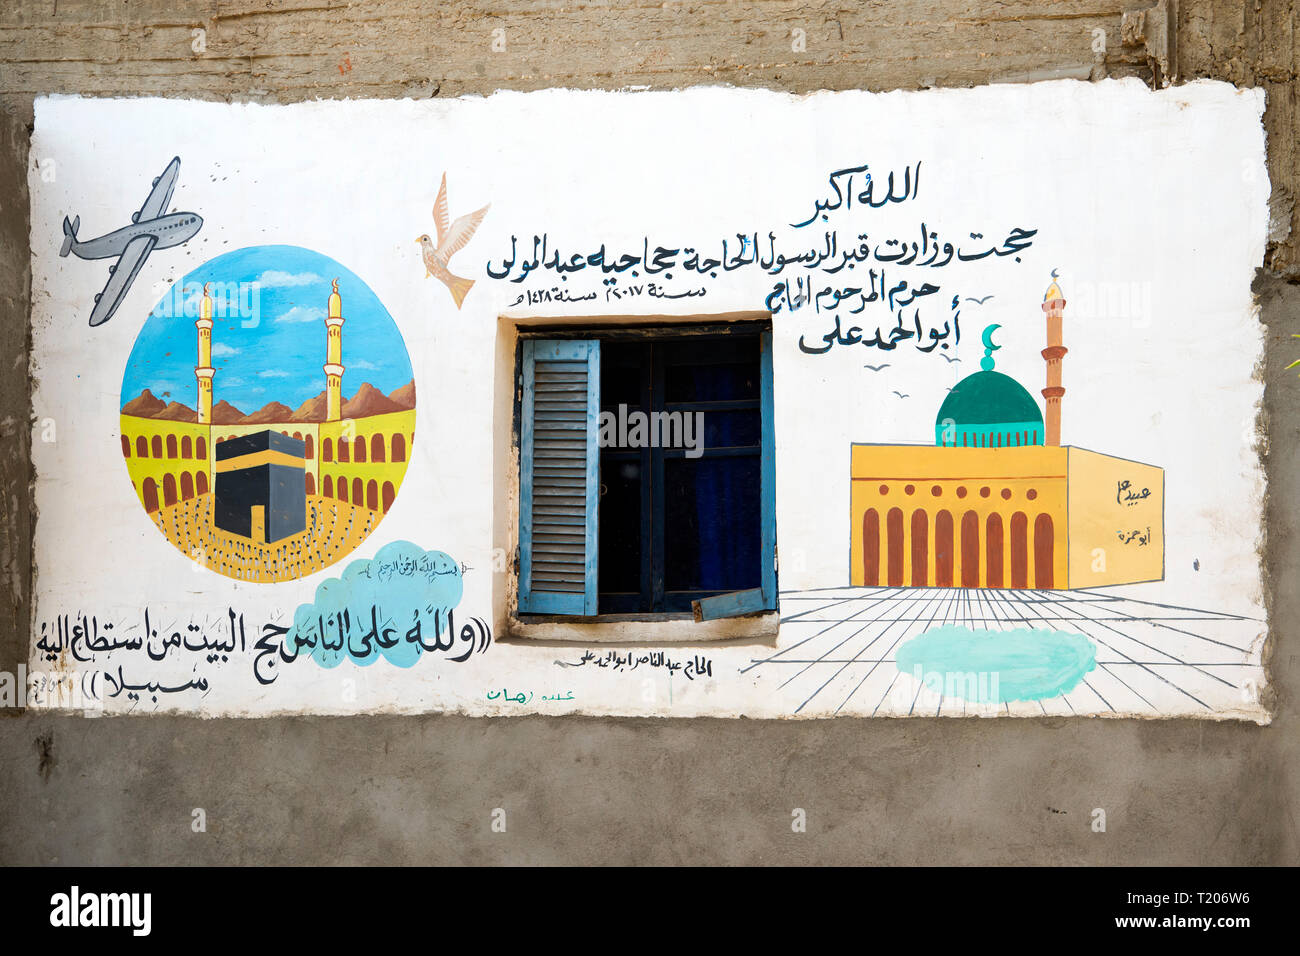 Ägypten, Dorf Garagos nördlich von Luxor bei Qena, Graffiti ein Haus zum Zeichen einer Wallfahrt nach Mekka Stockfoto